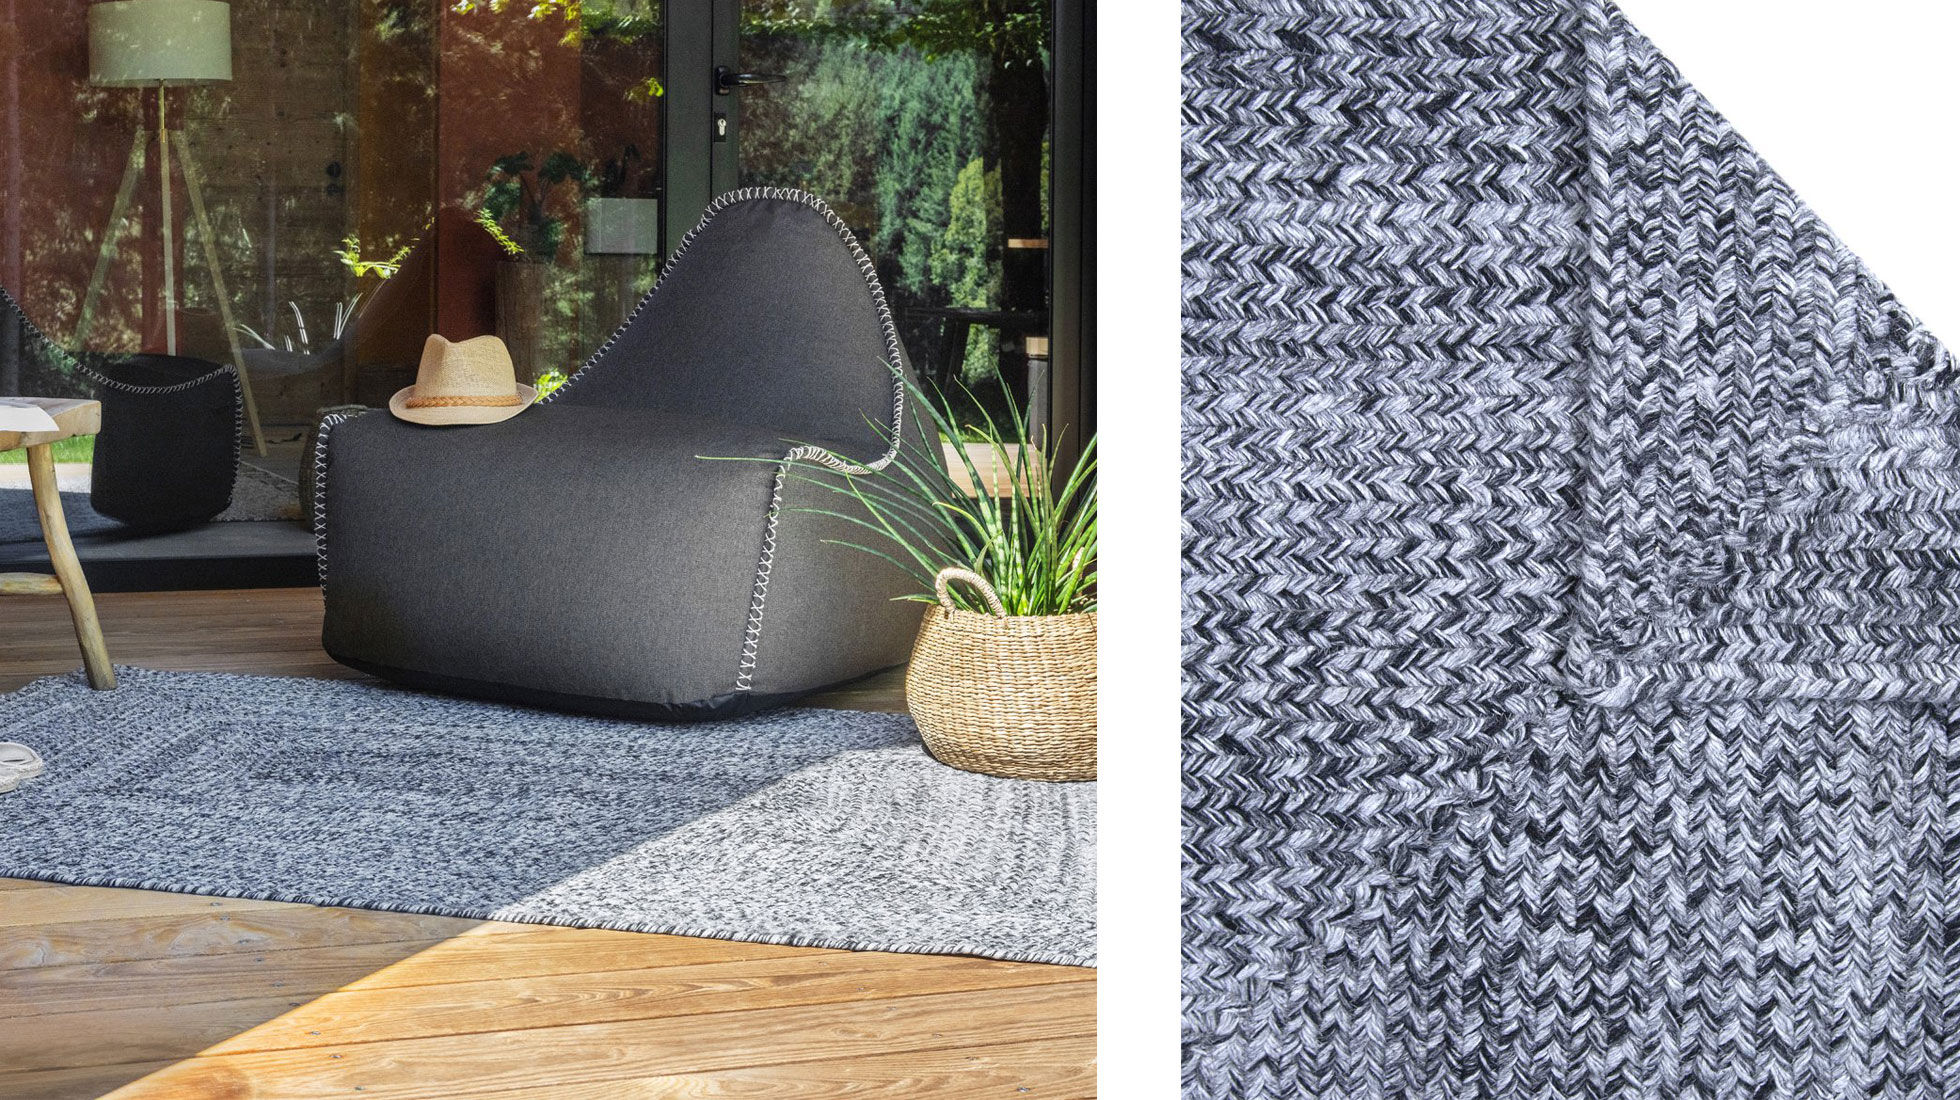 Sessel Outdoor auf einem Outdoor Teppich und Zoom Material